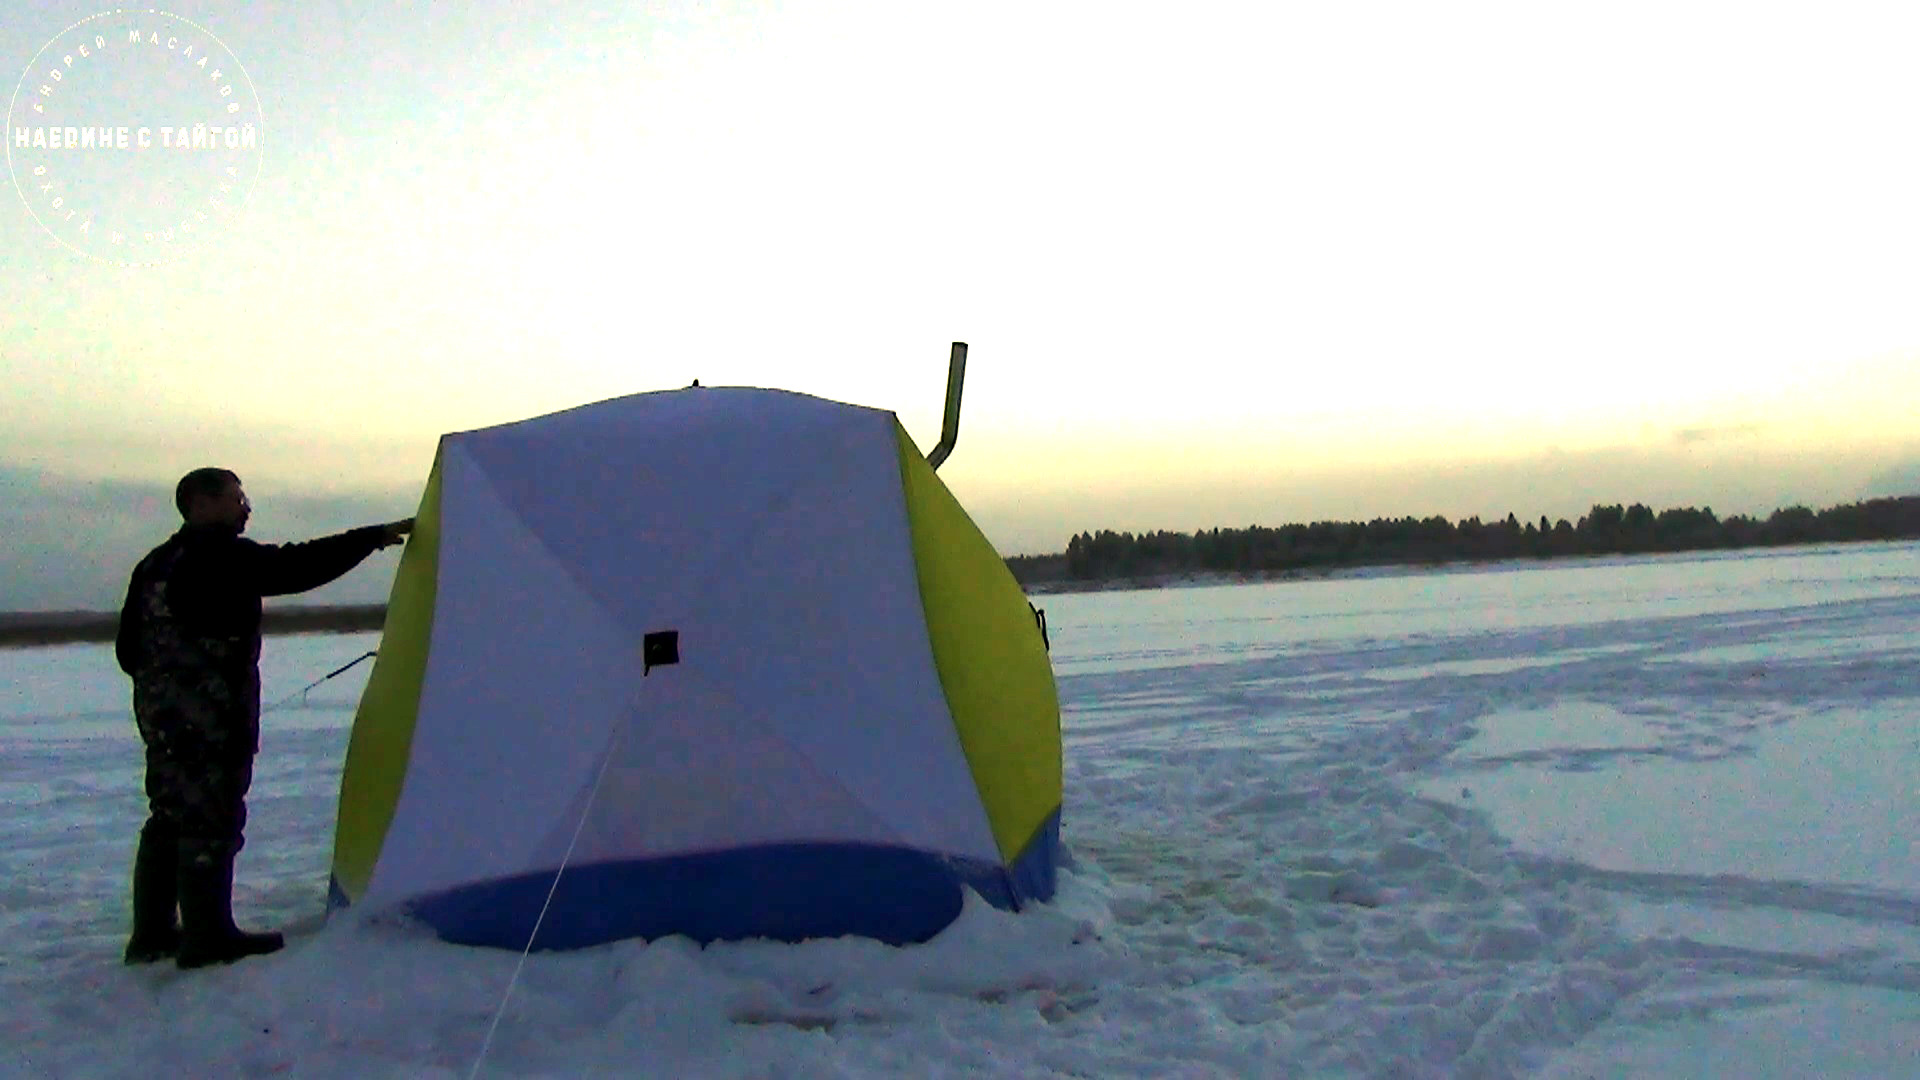 Зимняя рыбалка в палатке. Печка в палатку для зимней рыбалки. Рыбалка в палатке зимой с печкой. Зимние палатки для ночевки на льду. Ночевка в палатке зимой с печкой рыбалка.